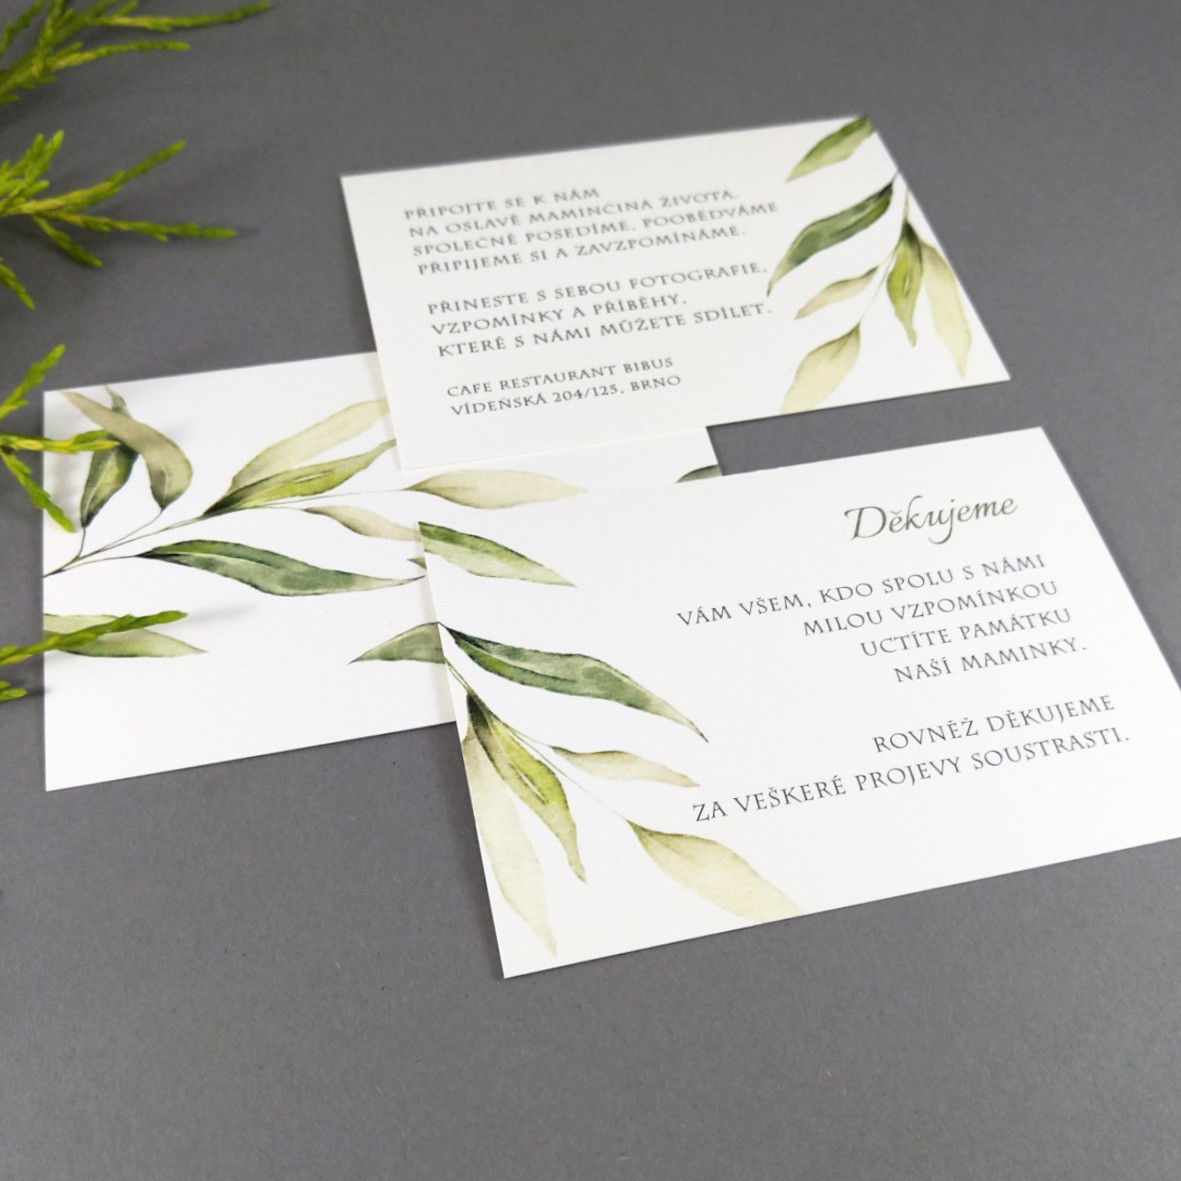 Pozvánka, informační karta – s motivem vrbové větvičky, formát 100 × 70 mm, oboustranná